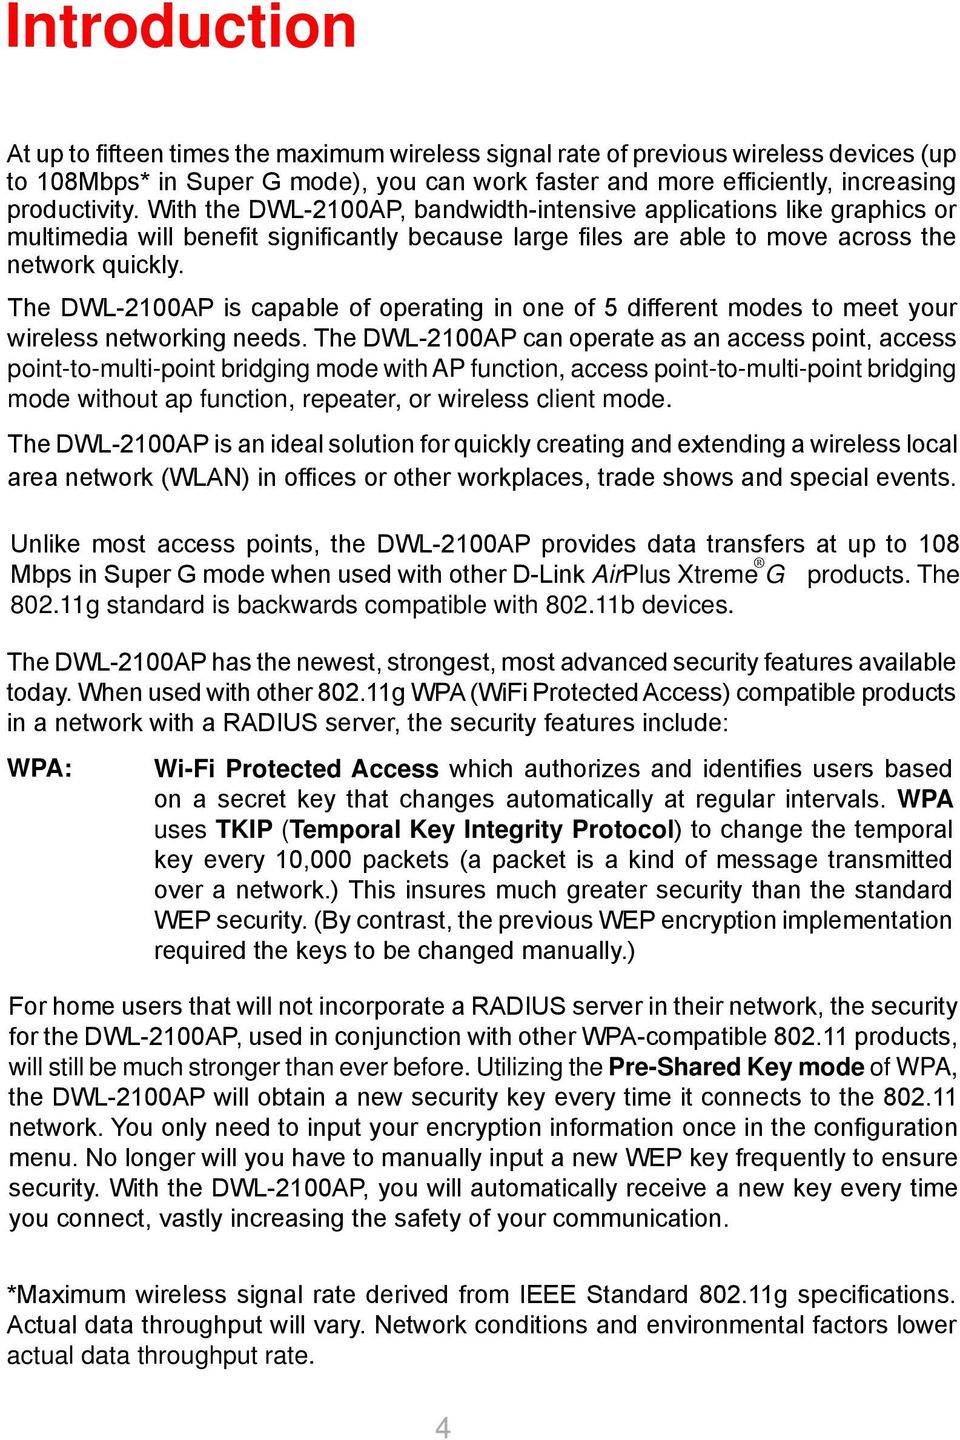 Formuler voksenalderen Enkelhed D-Link AirPlus Xtreme G DWL-2100AP - PDF Free Download